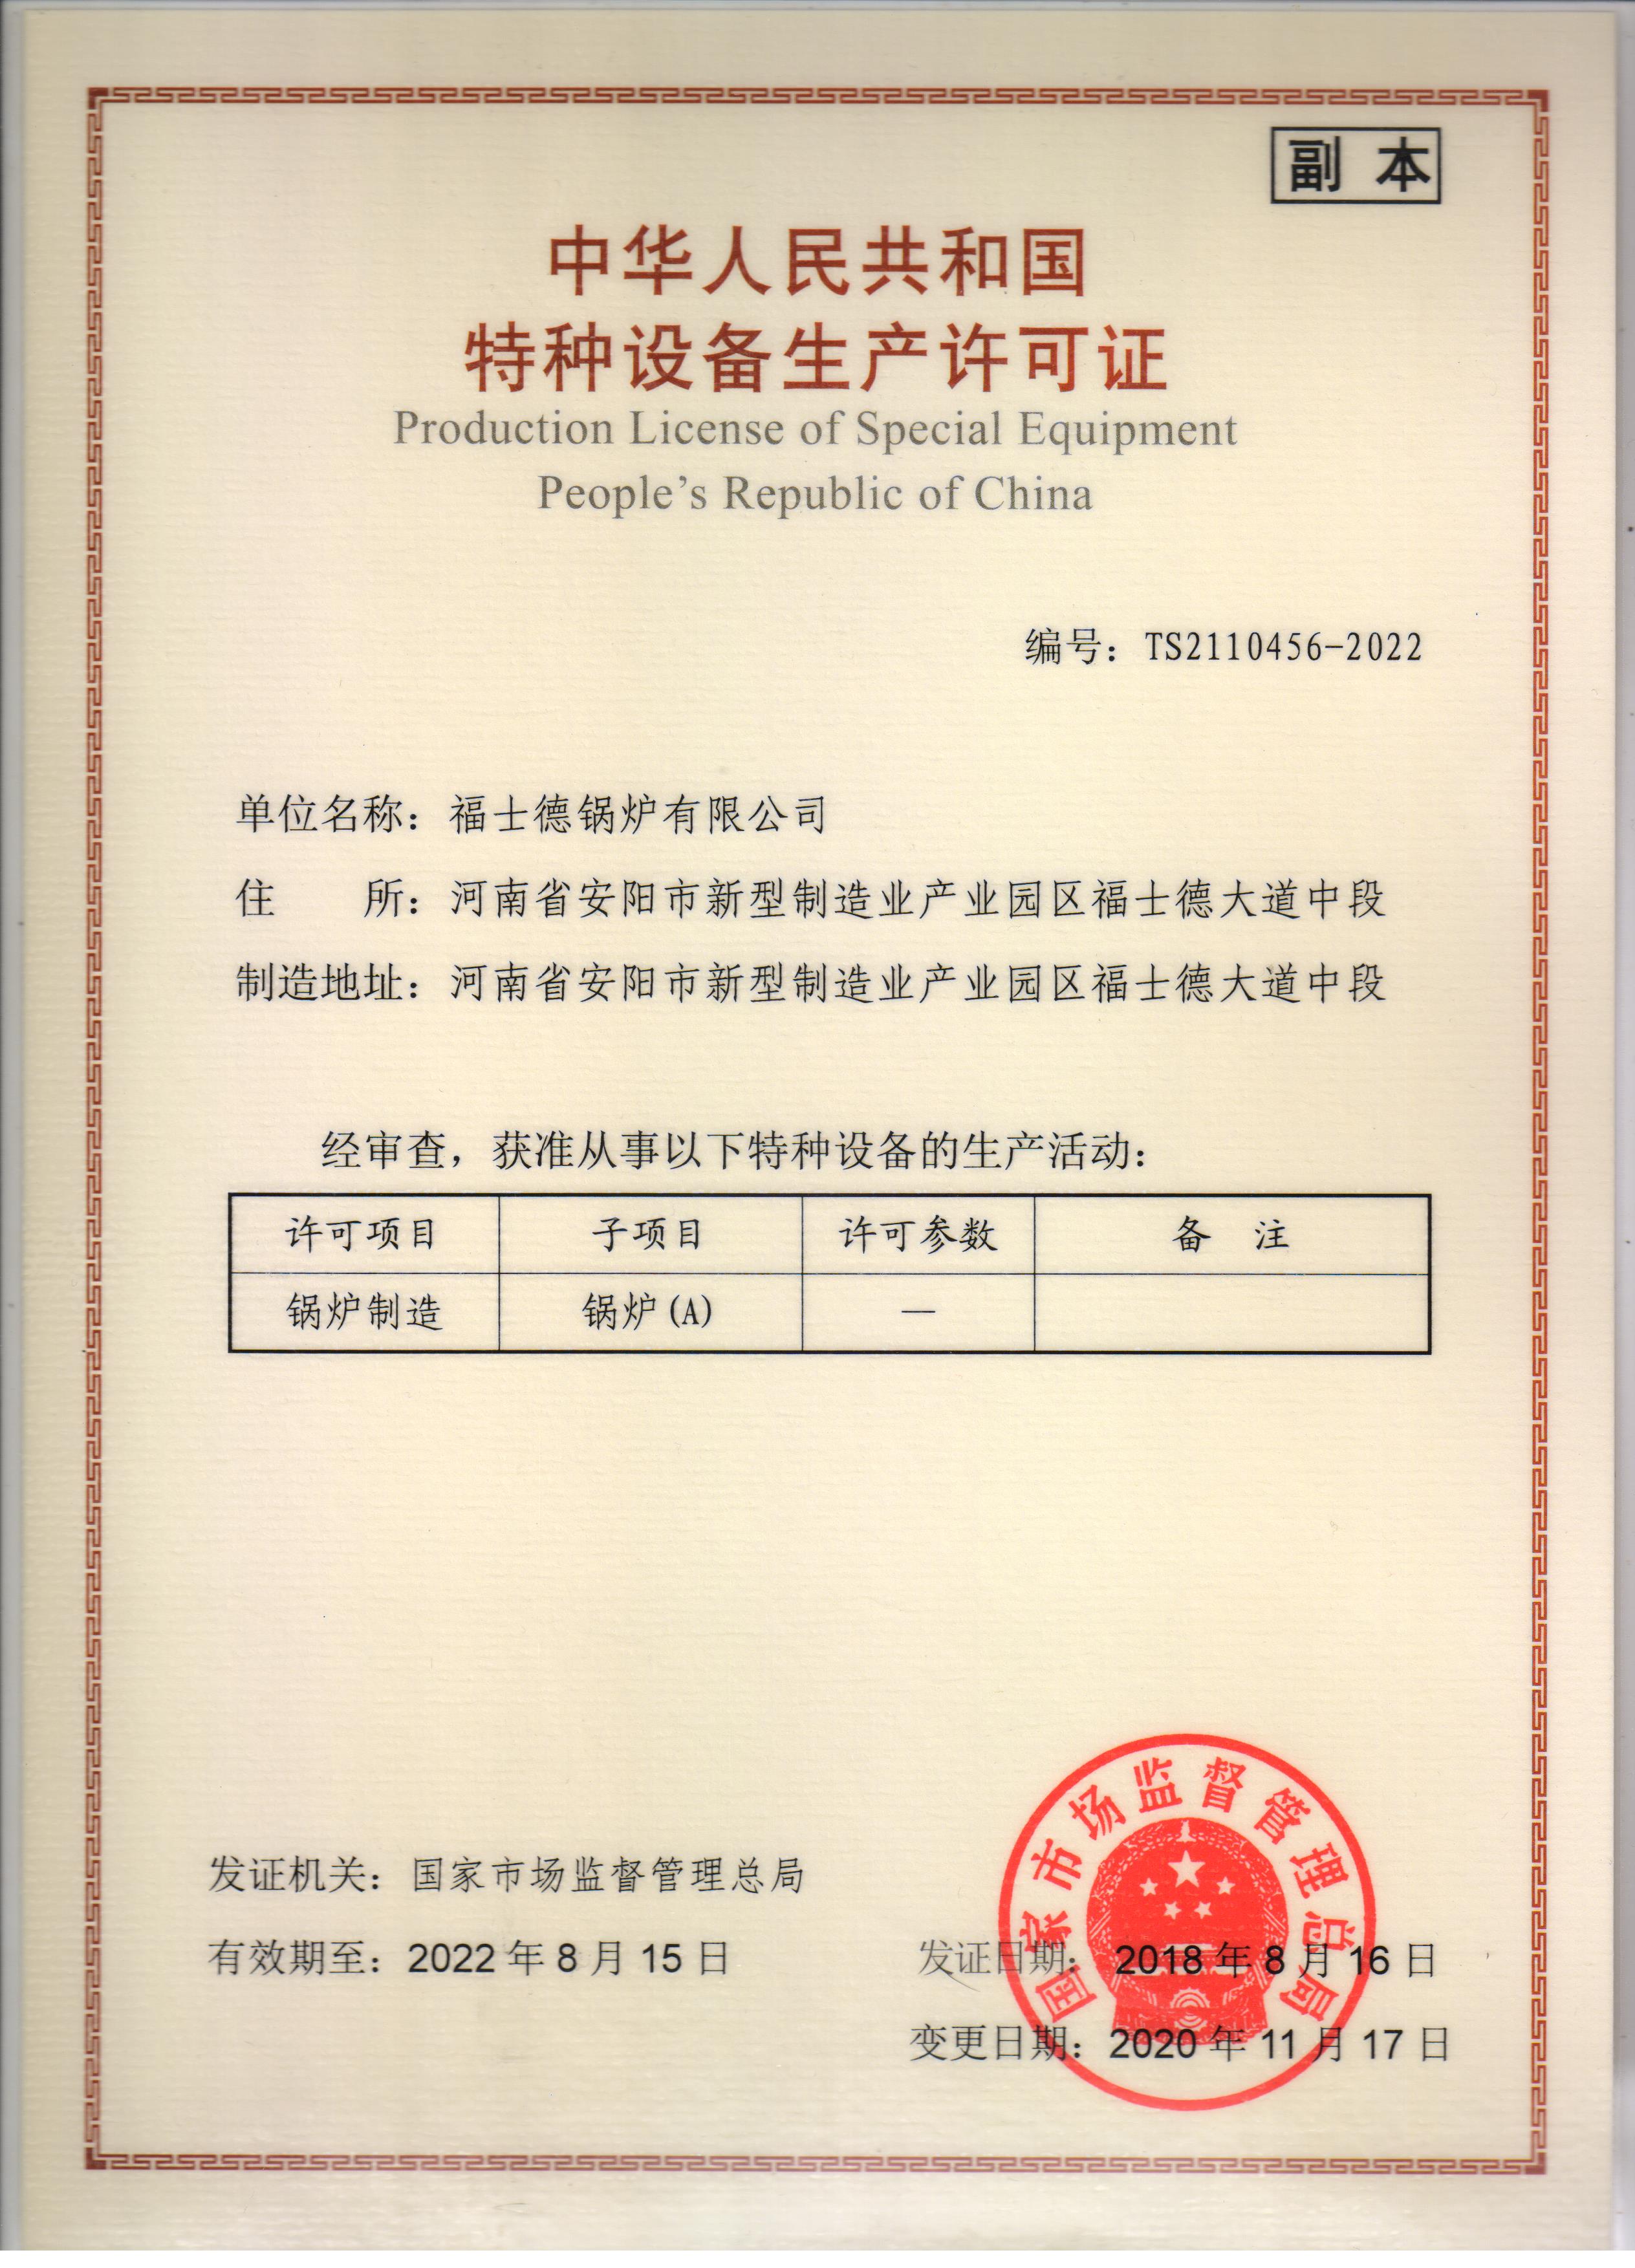 关于当前产品19066王者平台·(中国)官方网站的成功案例等相关图片